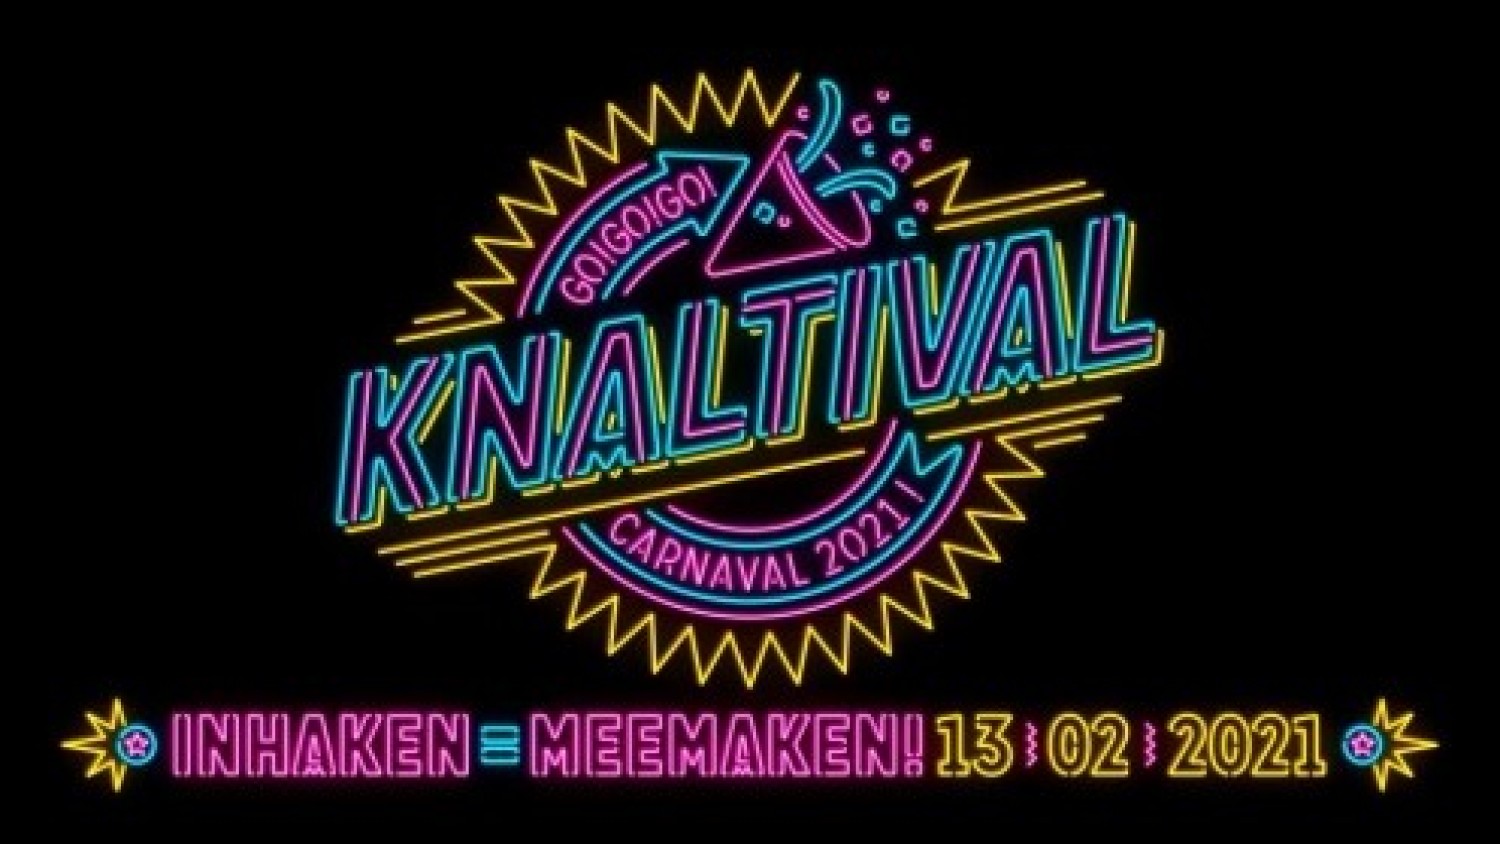 Knaltival Carnaval 2021